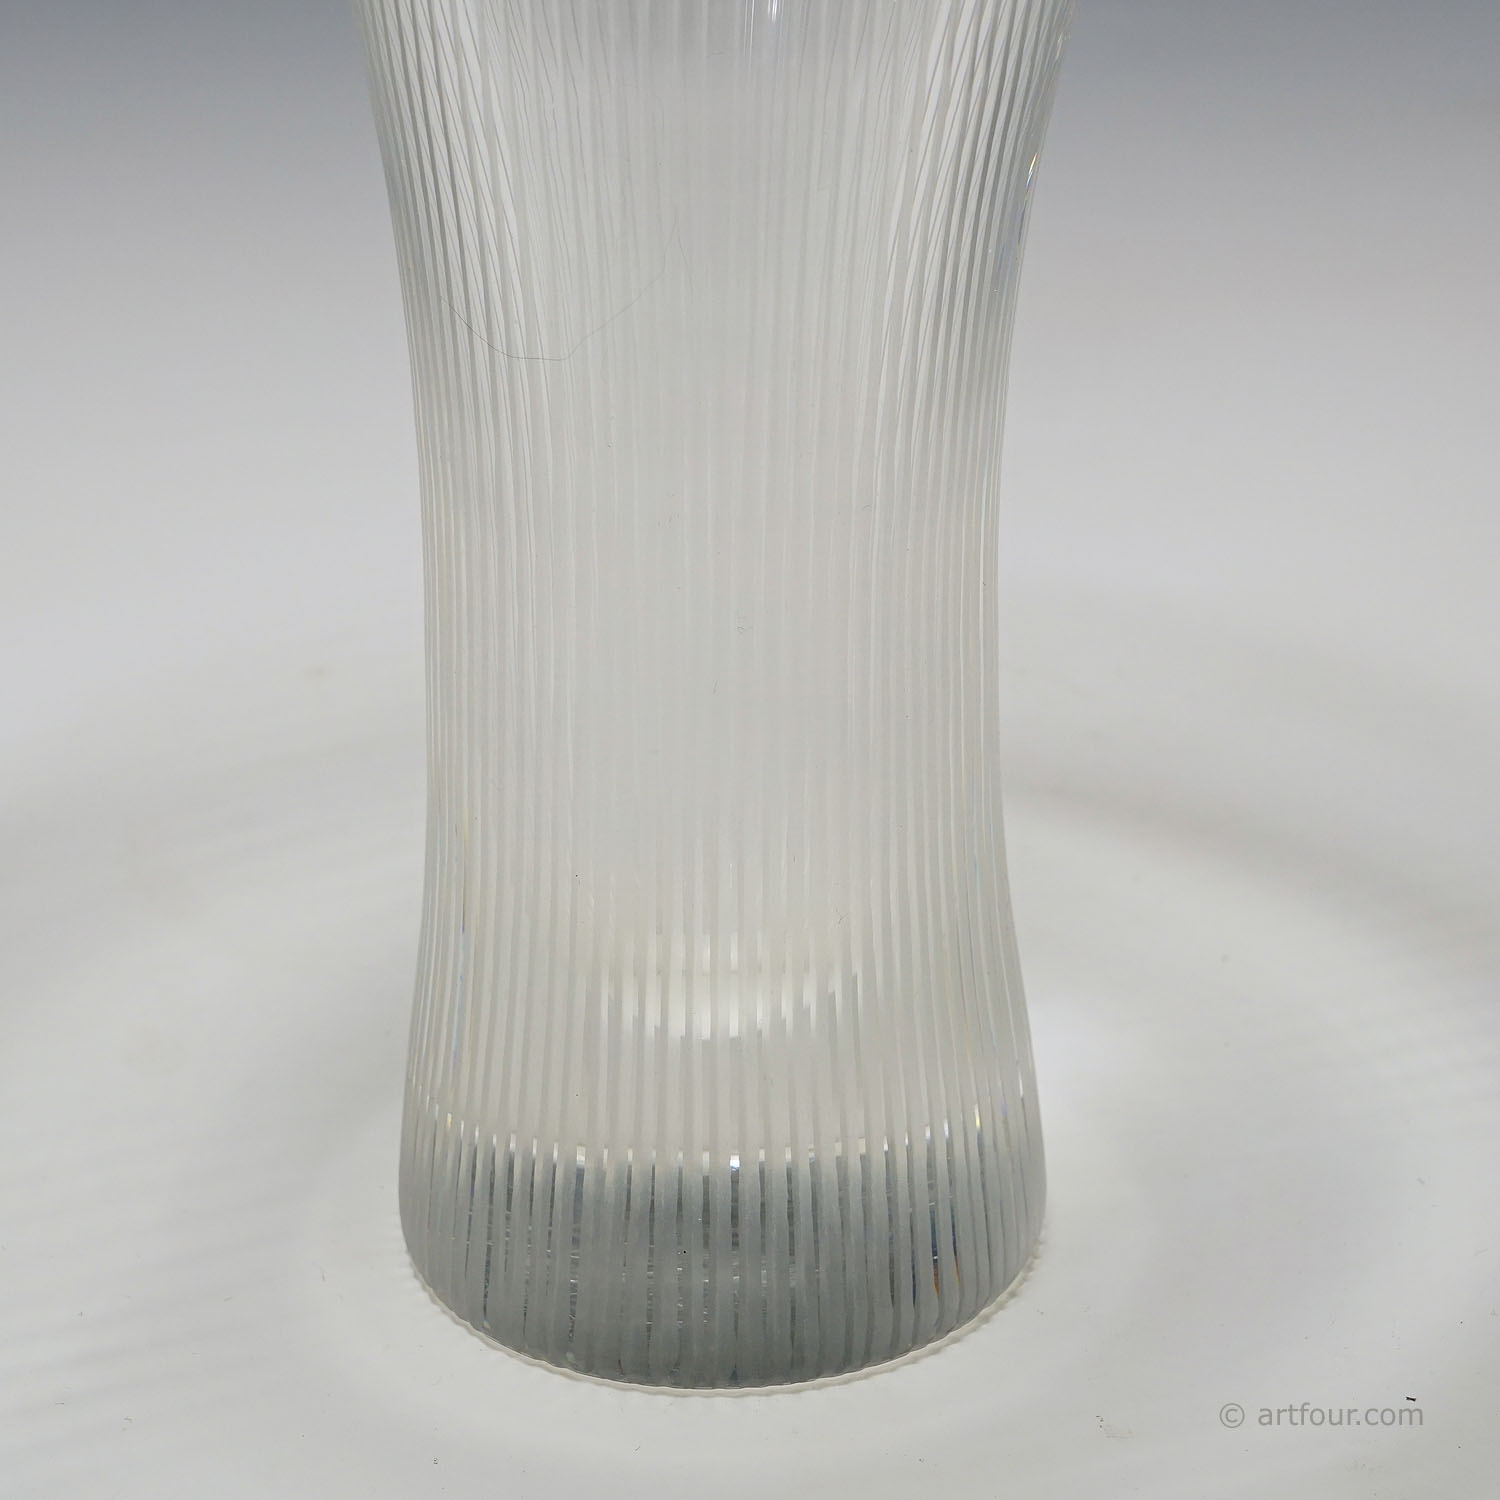 Kantarelli Art Glass Vase by Tapio Wirkkala for Iittala 1951